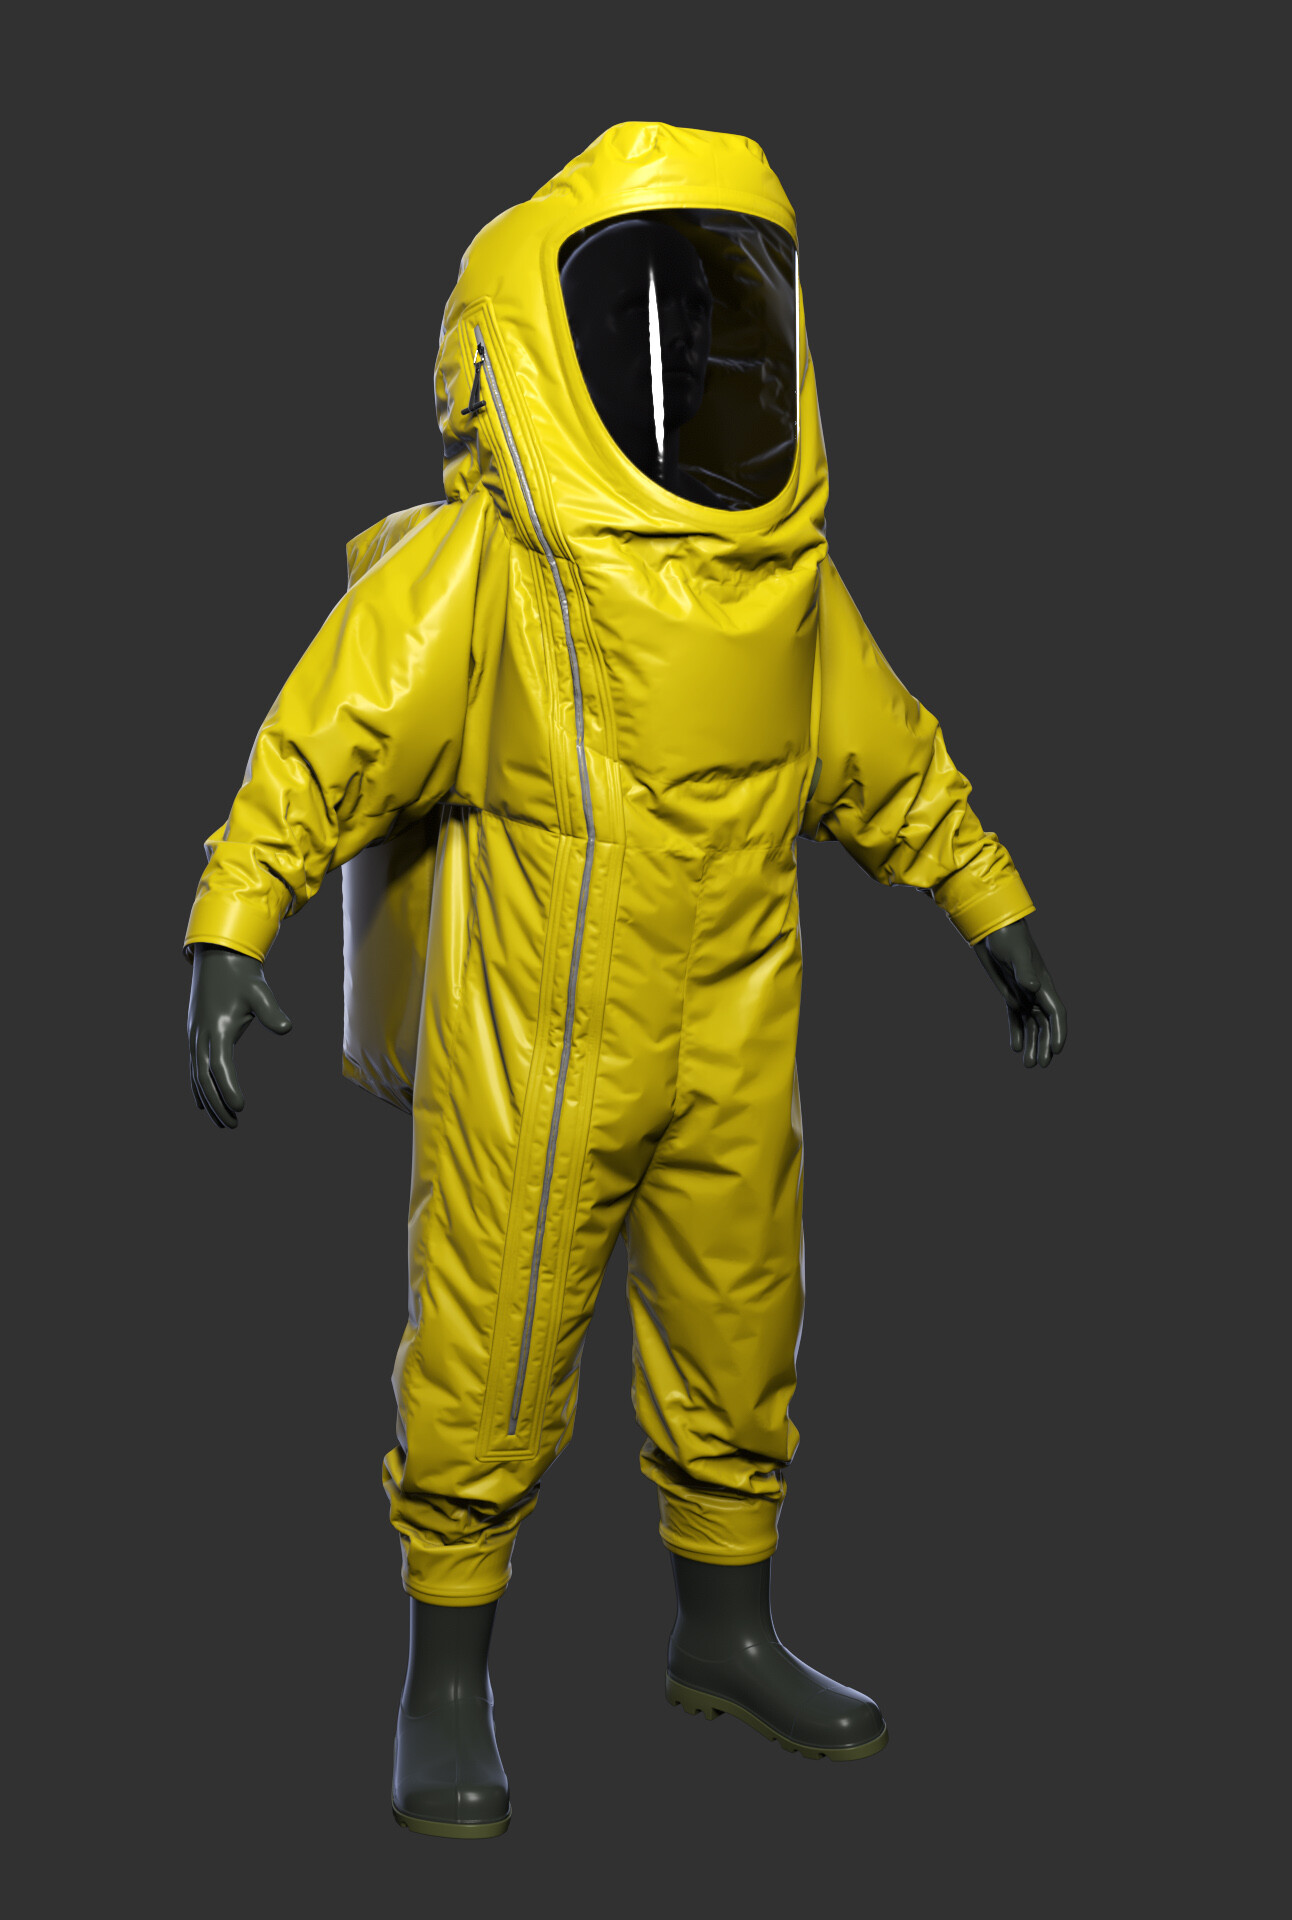 Eetu Hänninen - Radiation suits